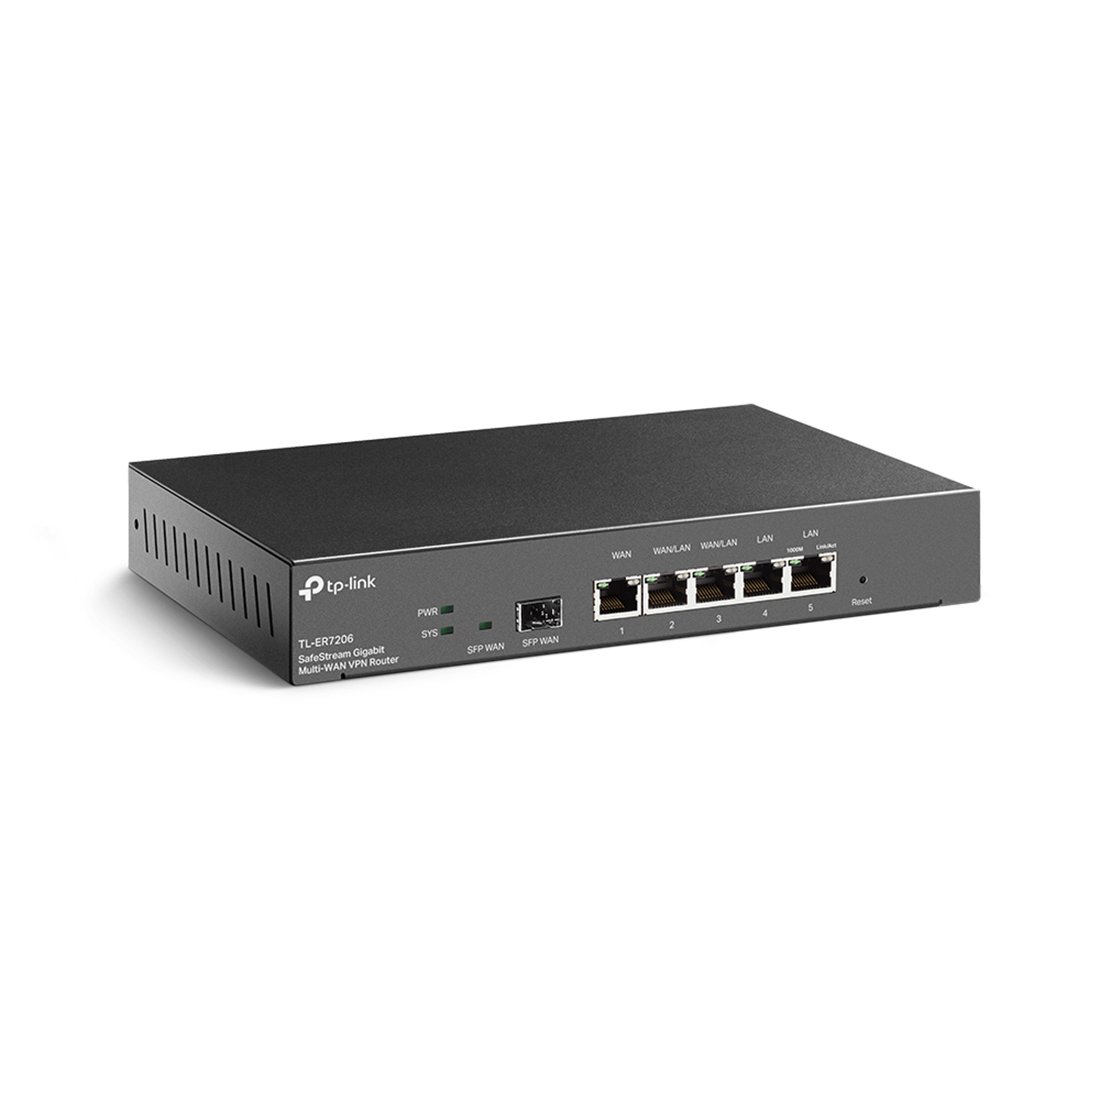 Маршрутизатор VPN, TP-Link, ER7206 , SafeStream Гигабитный VPN-маршрутизатор с 1 портом WAN + 3 наст